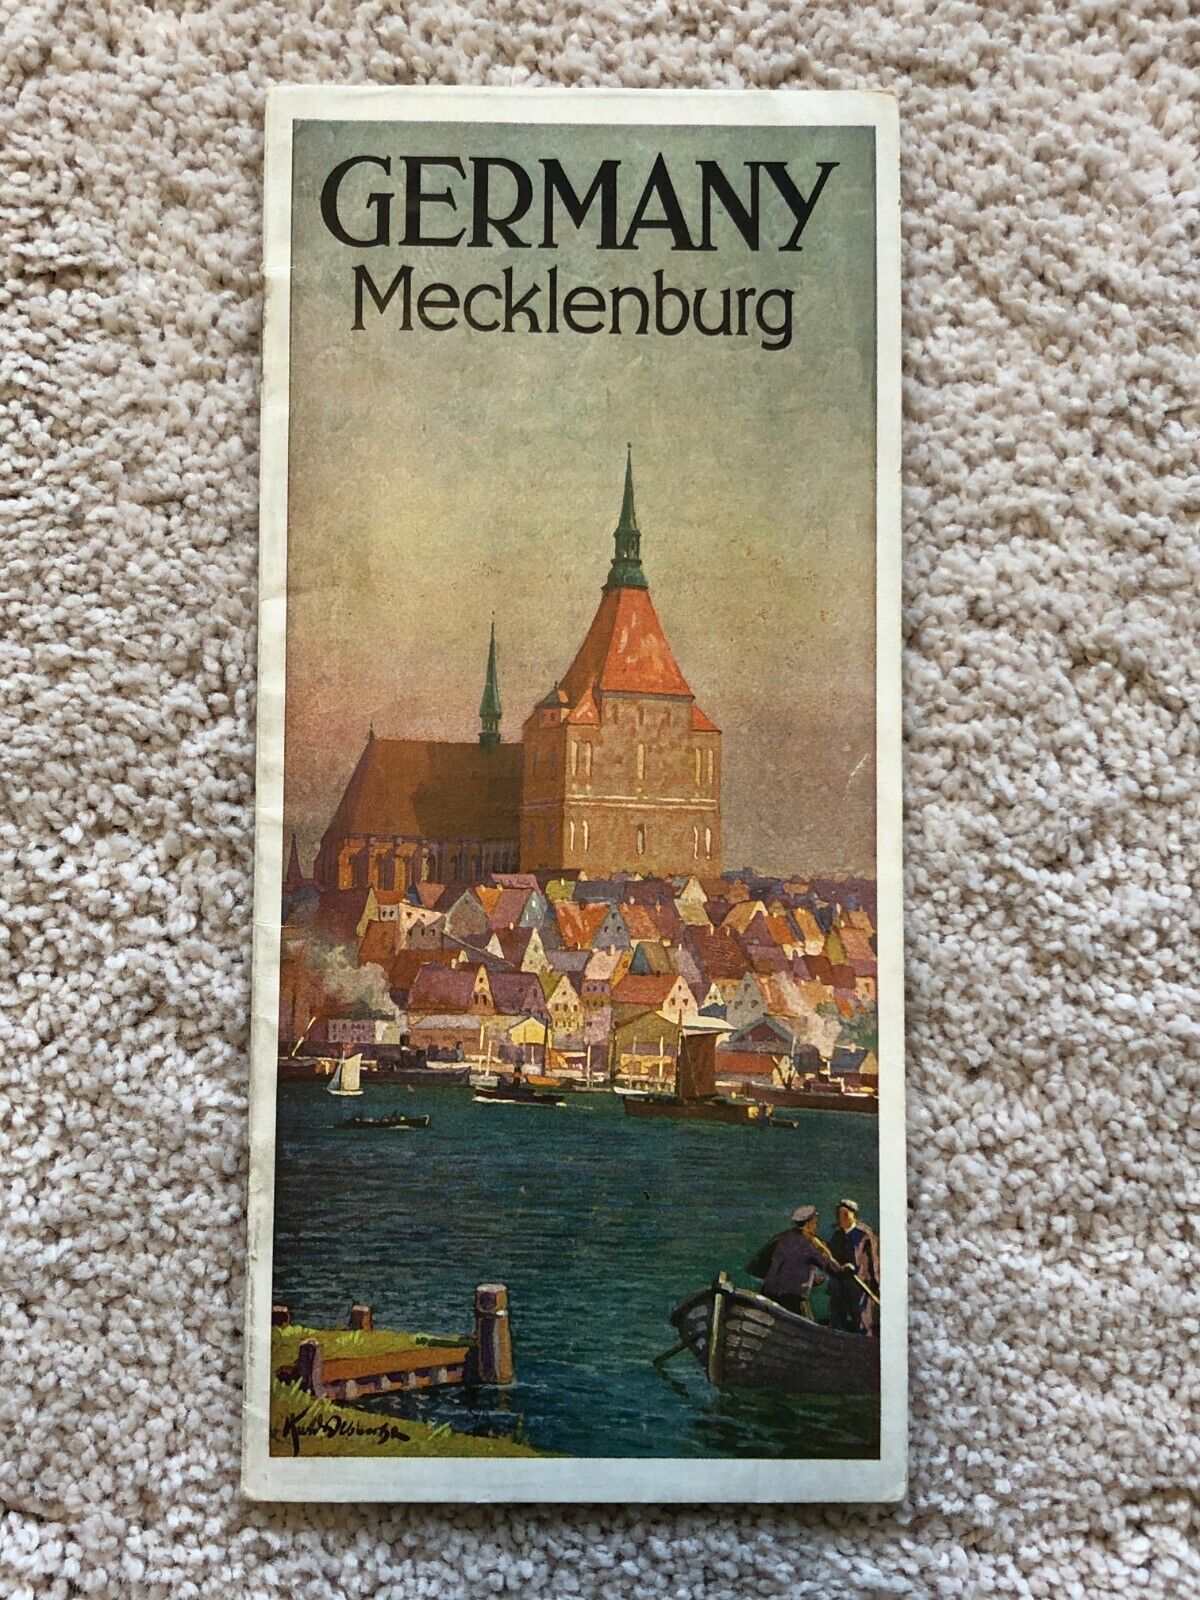 Vintage 1936 Germany - Mecklenburg Guide Book Travel Brochure